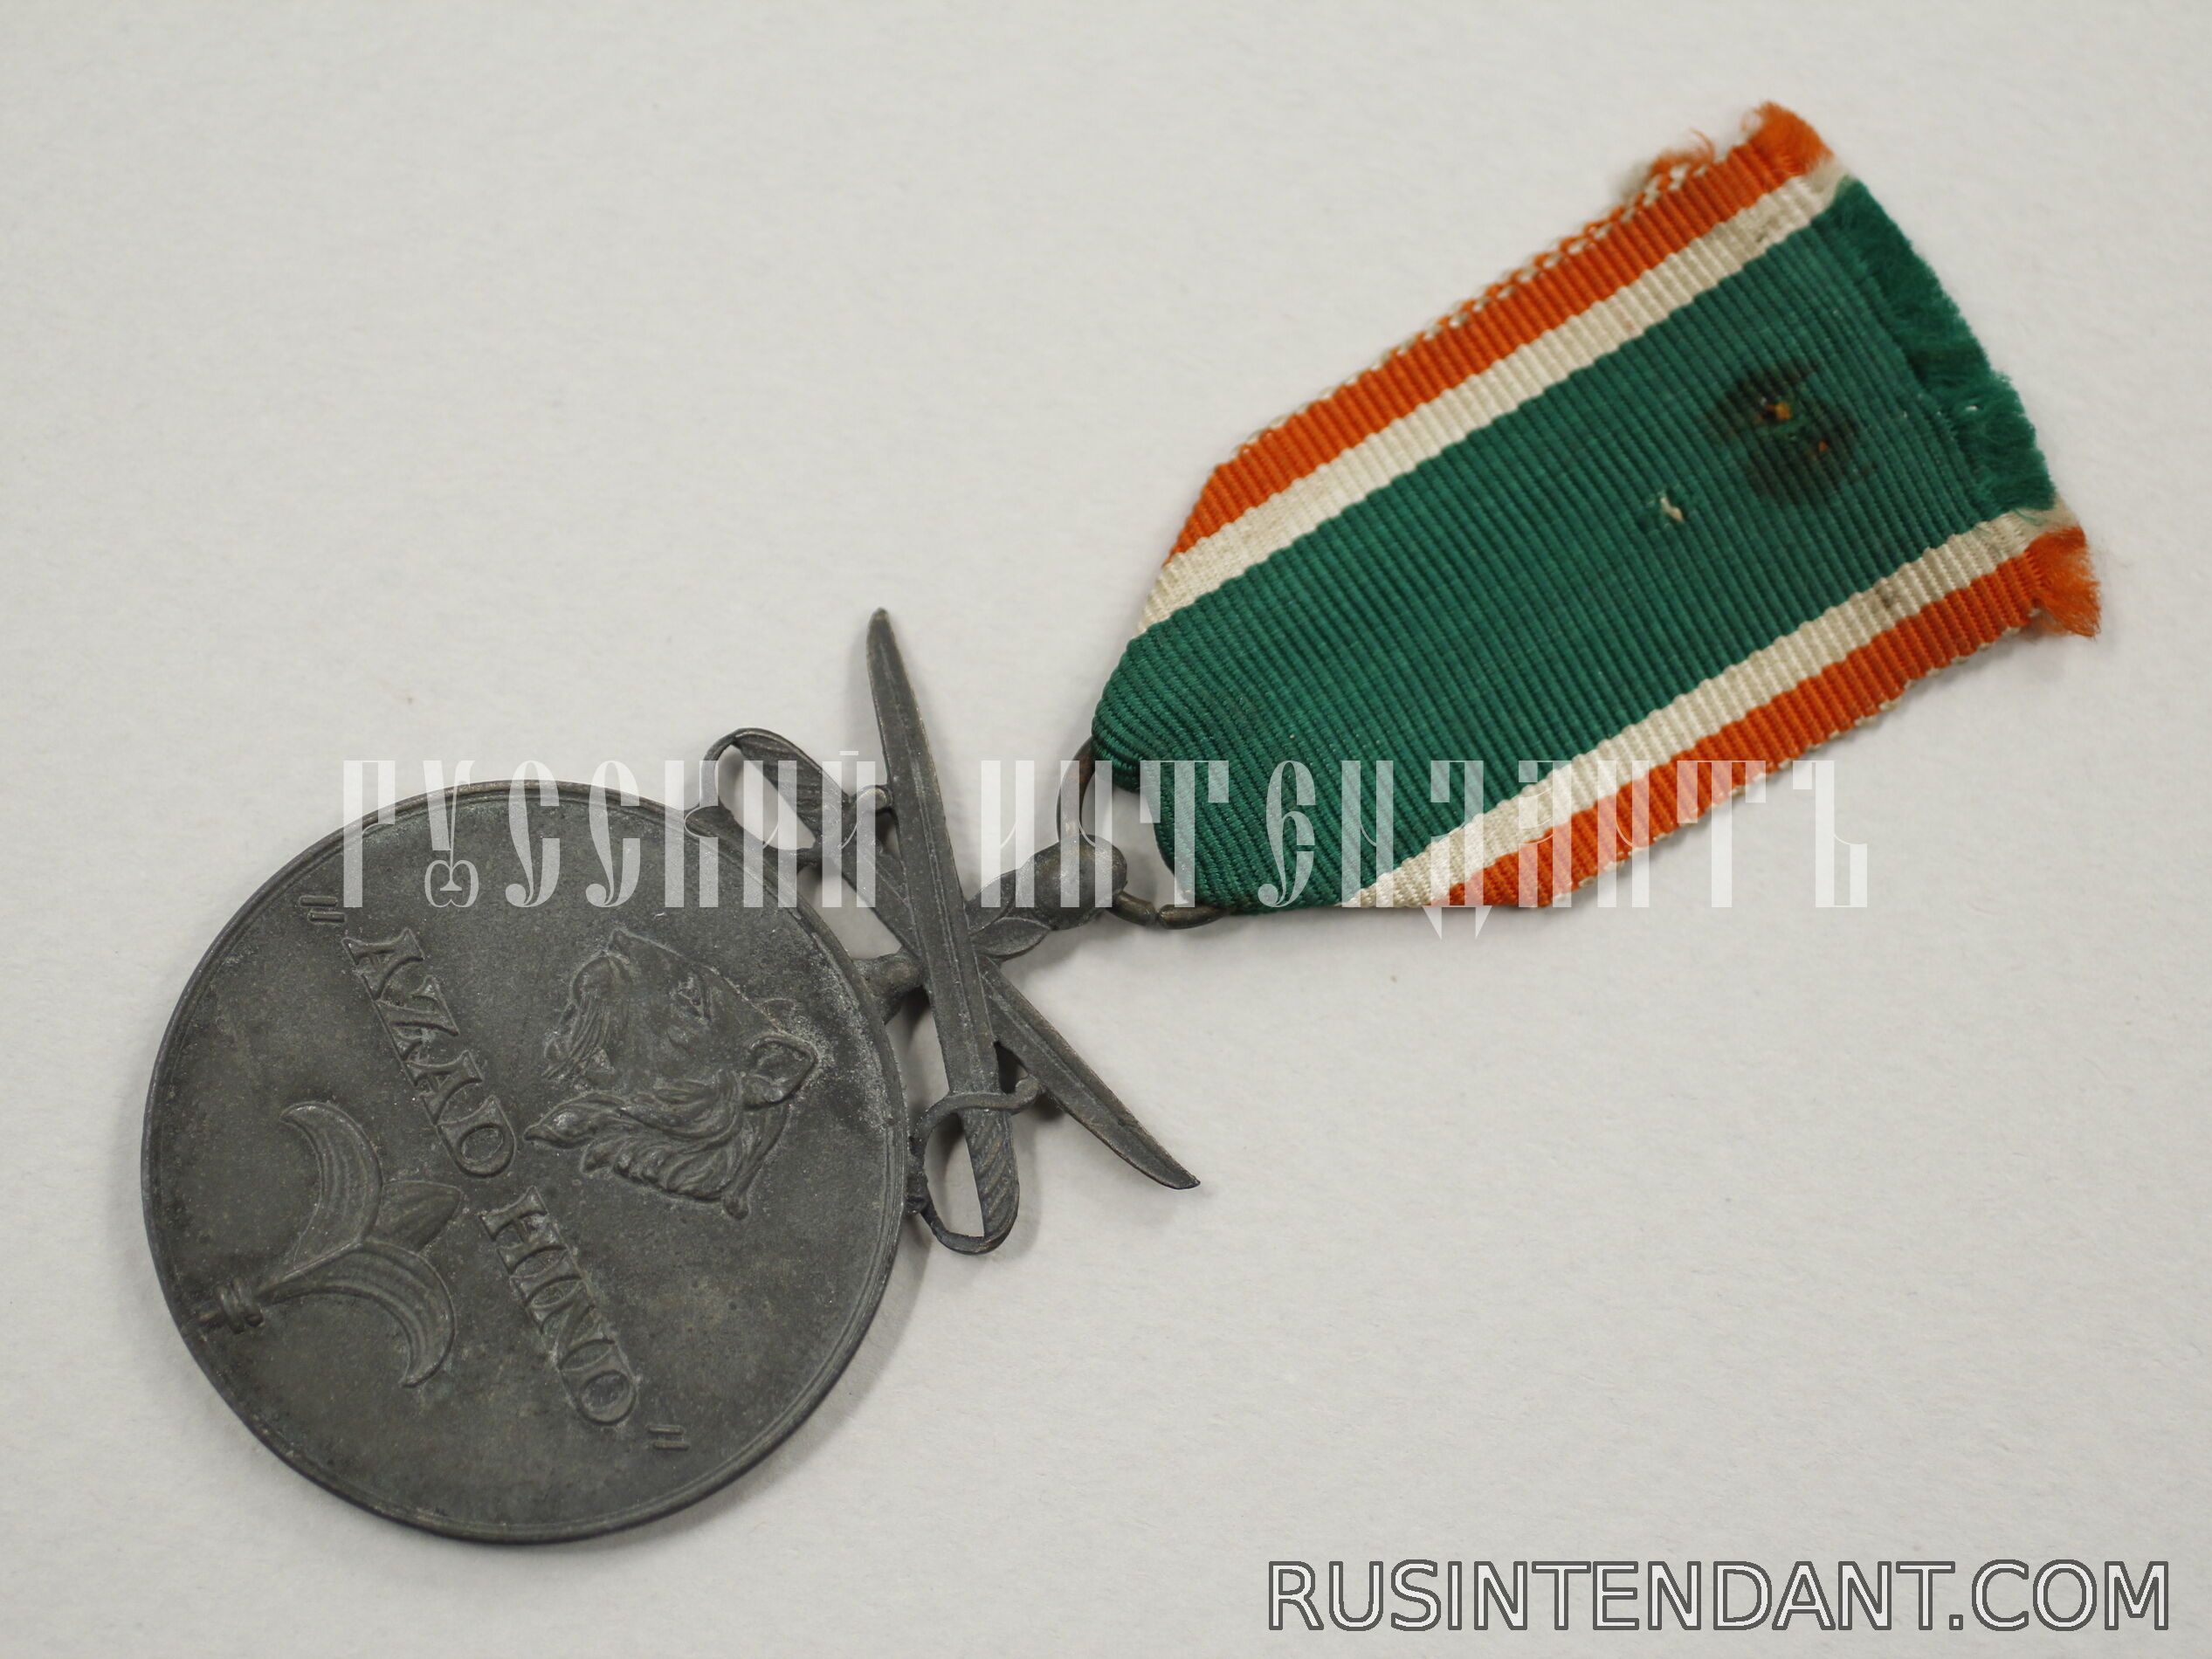 Фото 3: Медаль "Свободная Индия" с мечами 